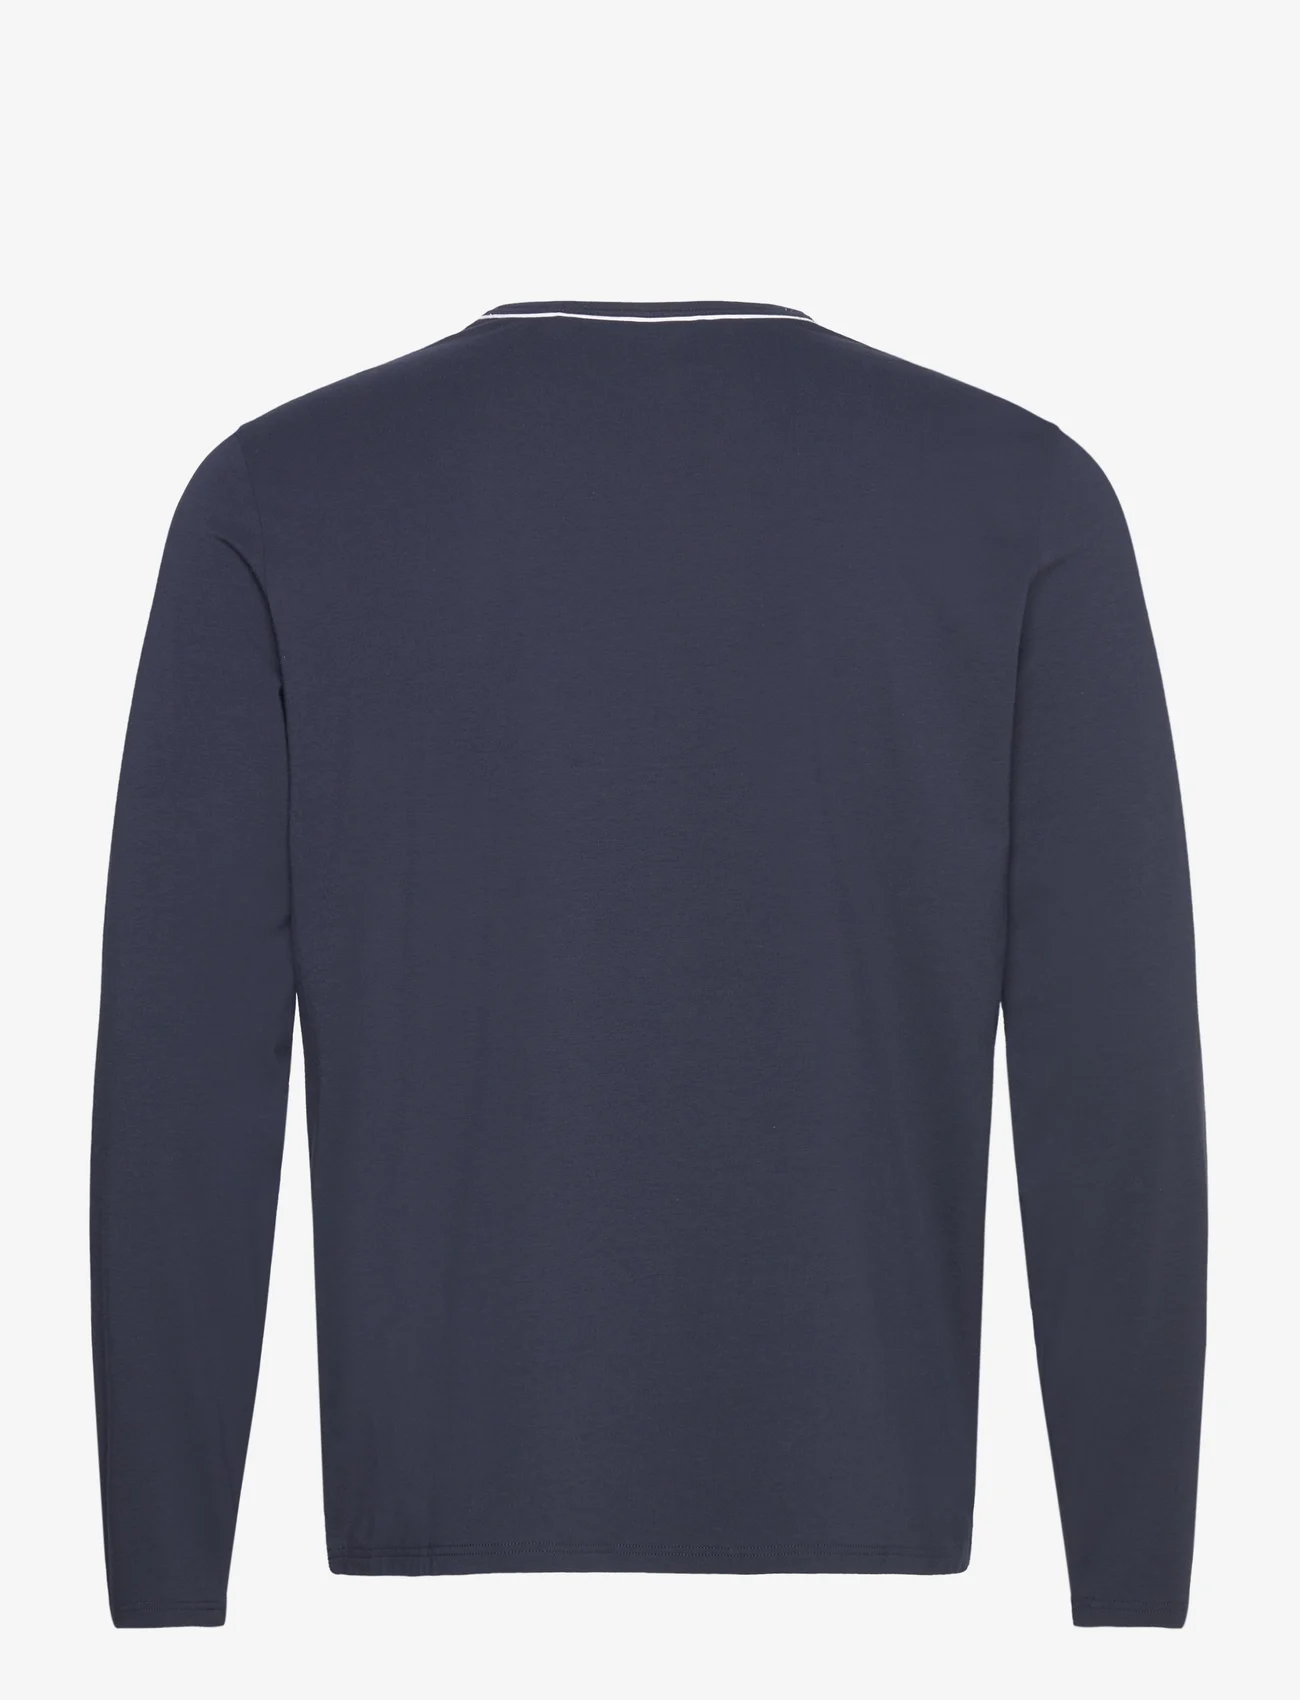 BOSS - Balance LS-Shirt - long-sleeved t-shirts - dark blue - 1